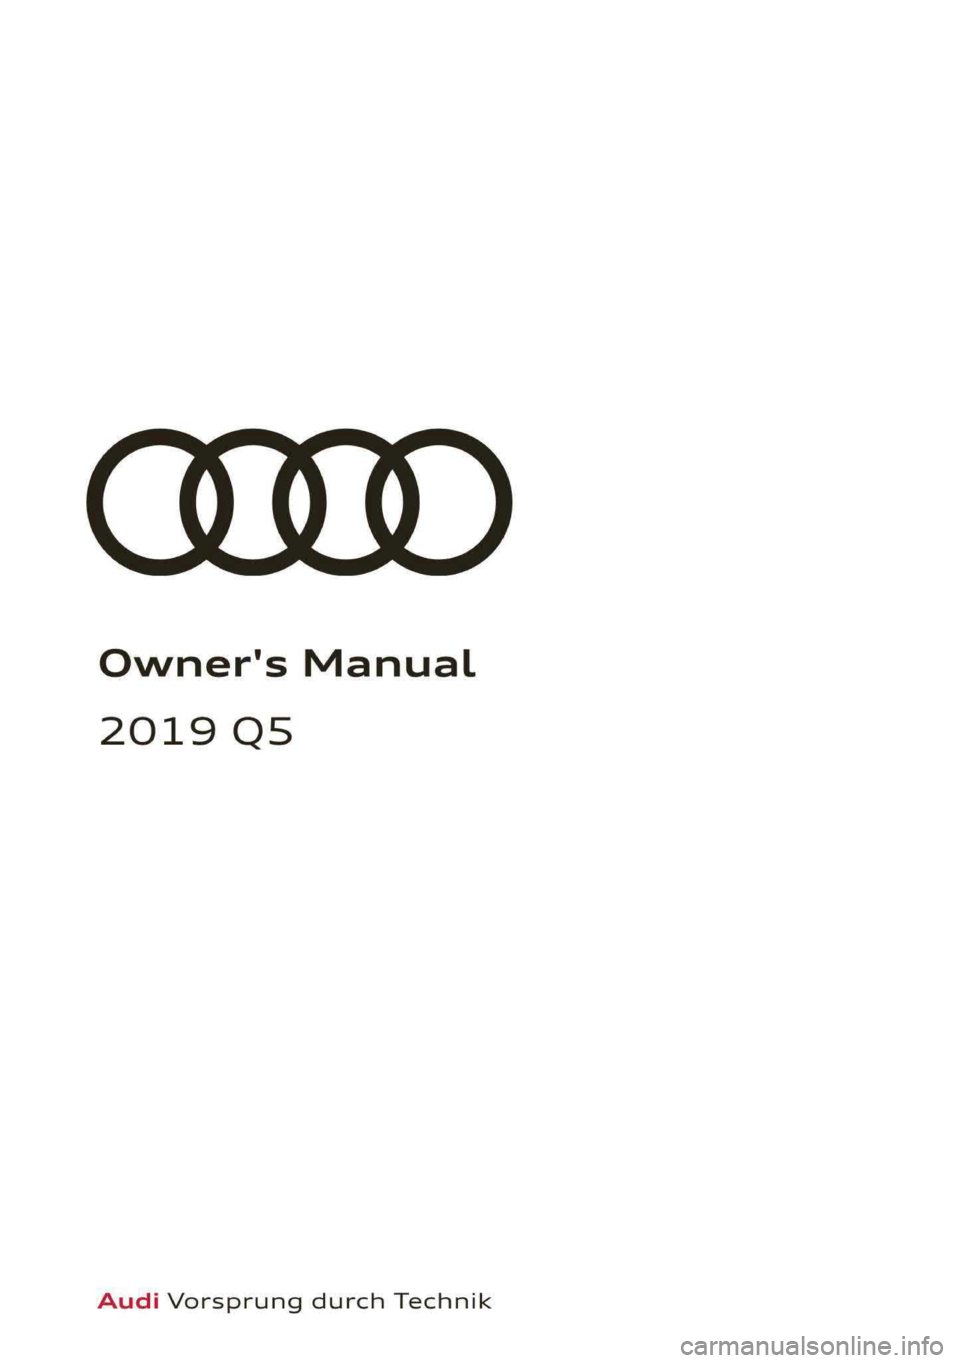 AUDI Q5 2019  Owners Manual Owner'sManual
2019Q5
AudiVorsprungdurchTechnik  